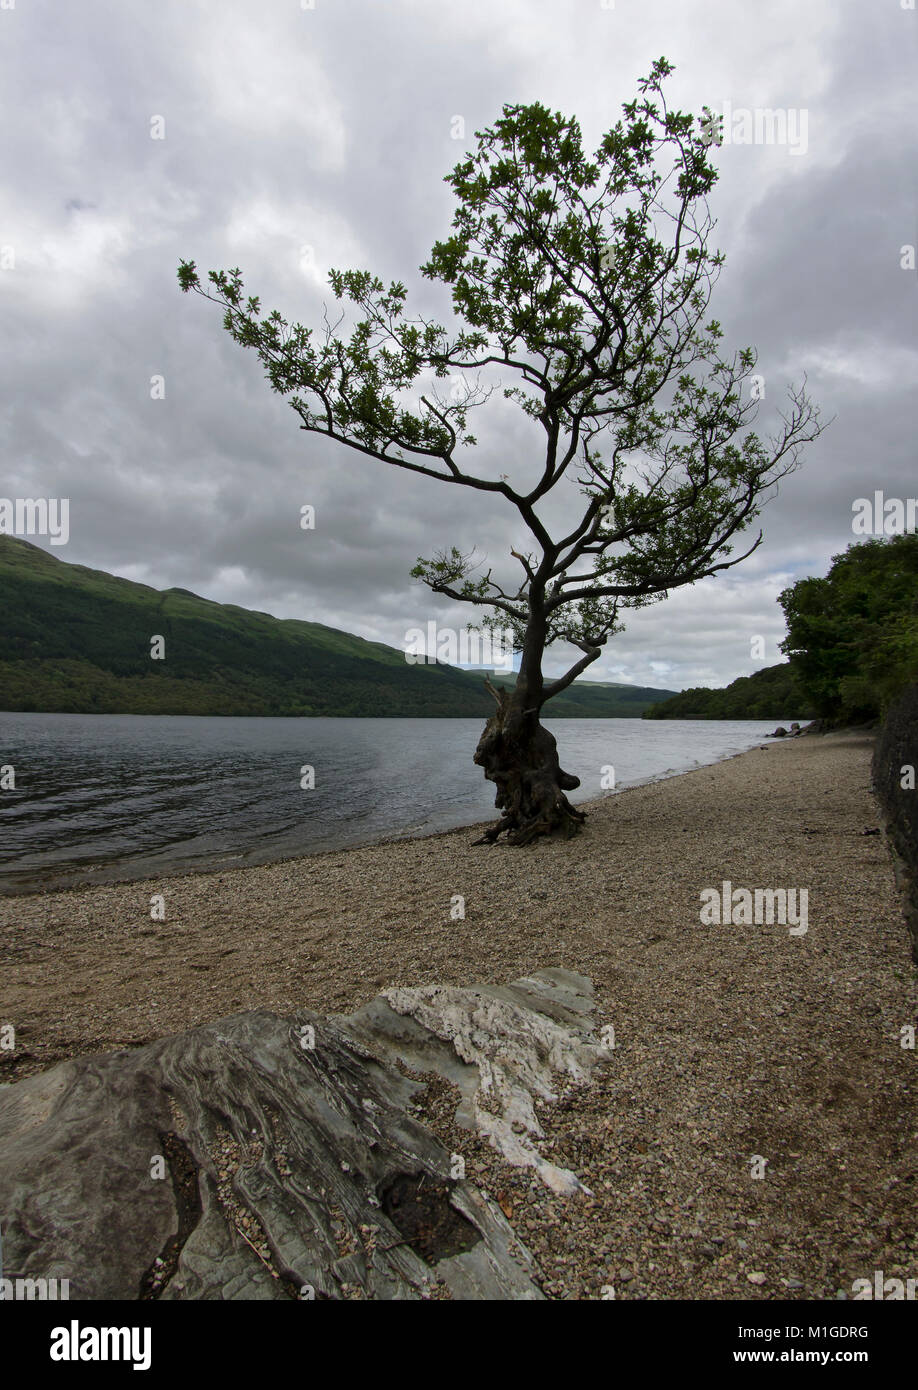 Ein einsamer Baum auf einem Kiesstrand an der Loch Lomond, Schottland, Großbritannien Stockfoto